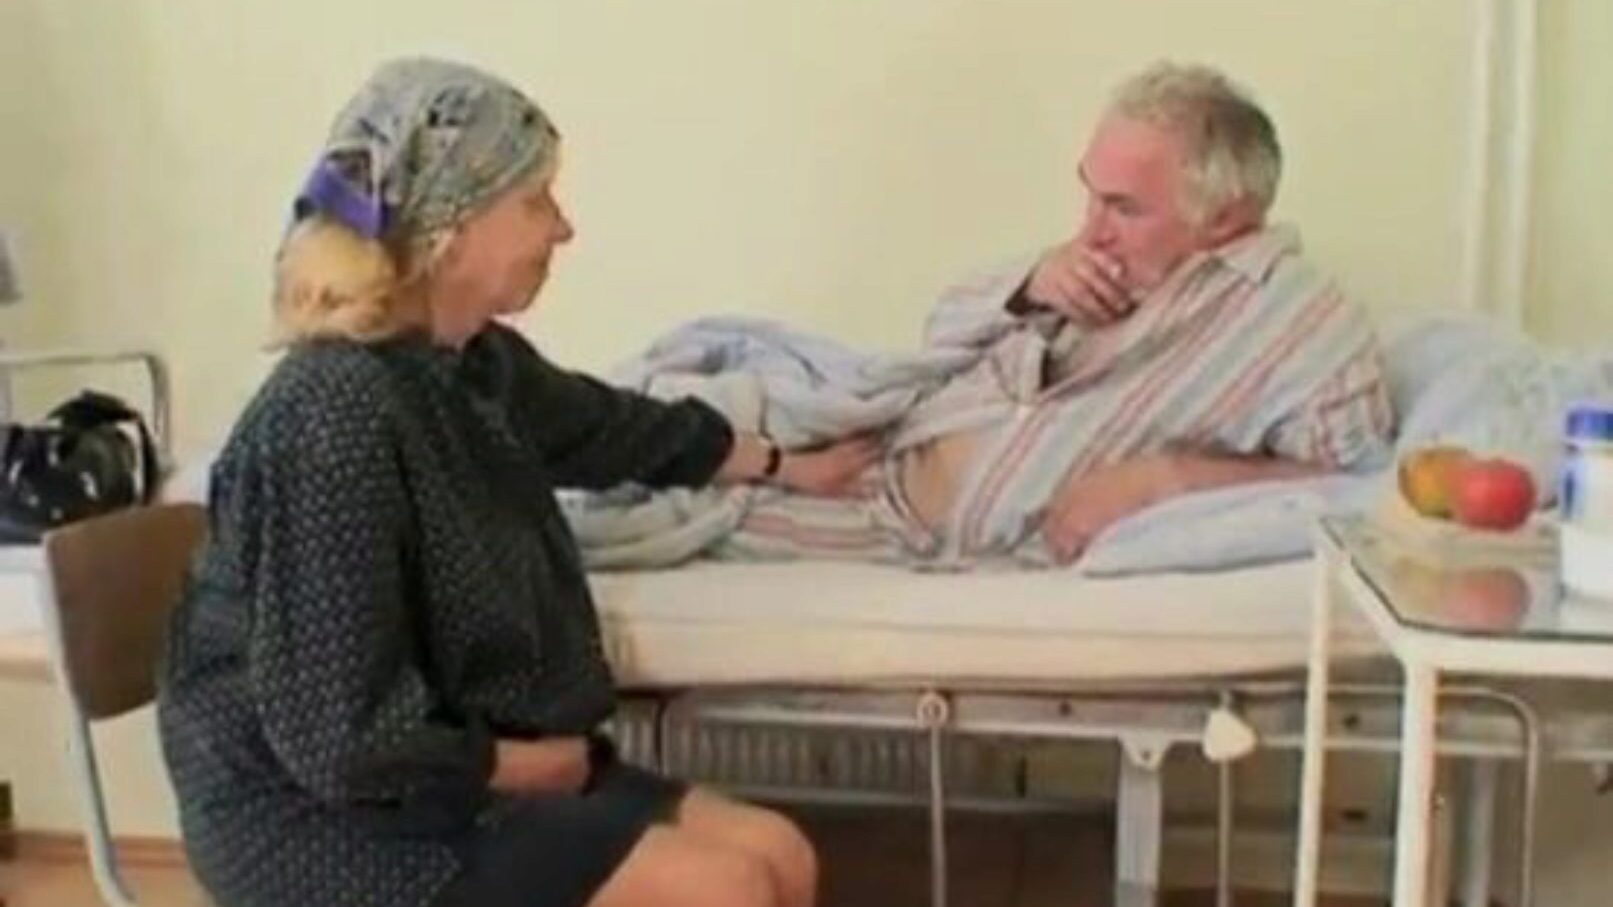 η άτακτη καυτή νοσοκόμα βοηθά τον ηλικιωμένο ασθενή να ξαπλωθεί